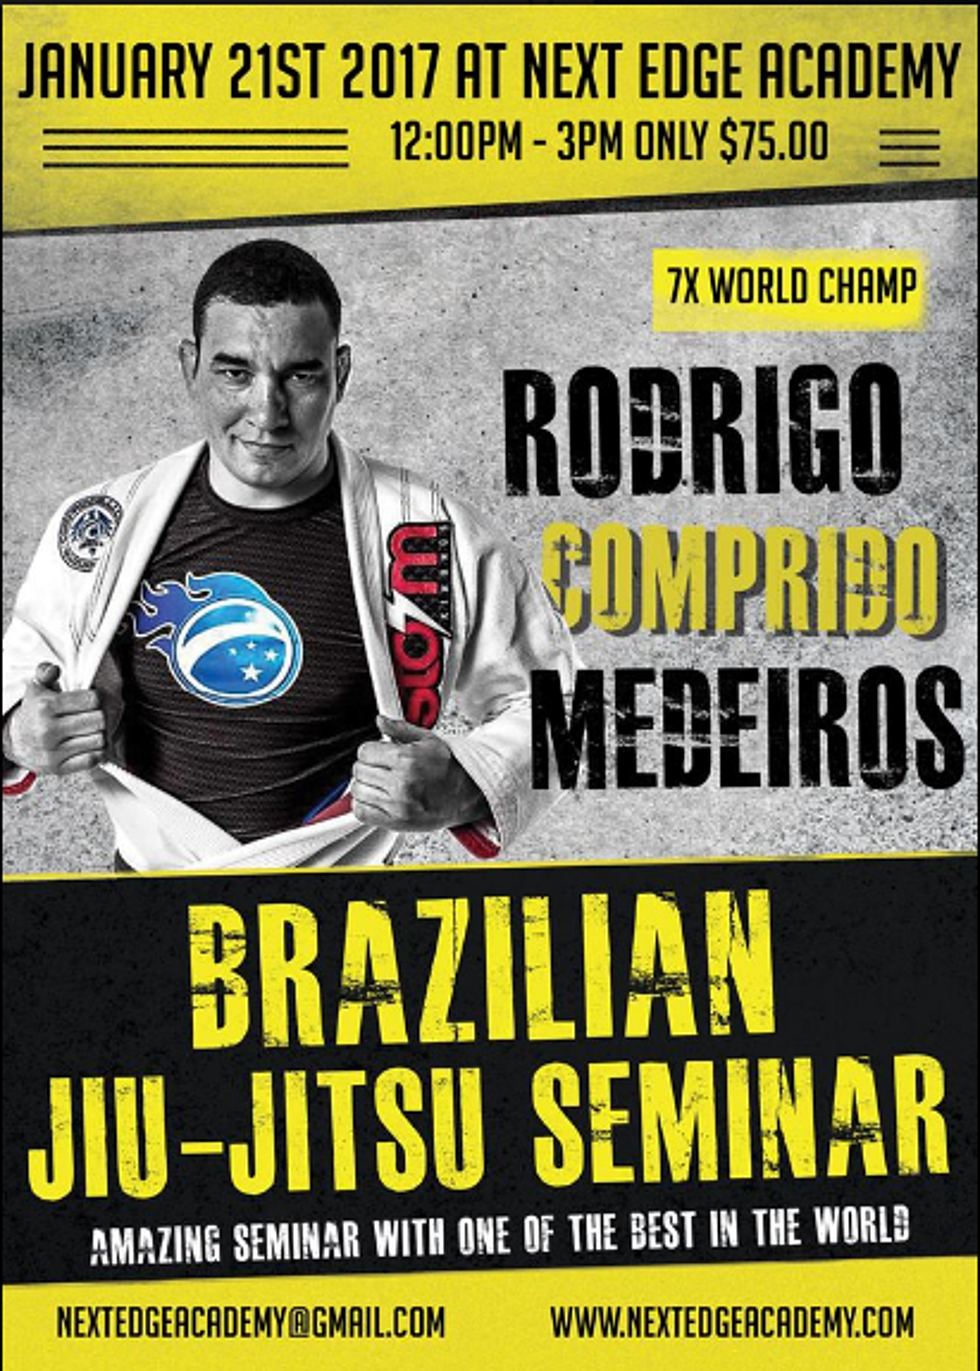 SF Brazilian Jiu-Jitsu Seminar Featuring 7X World Champ